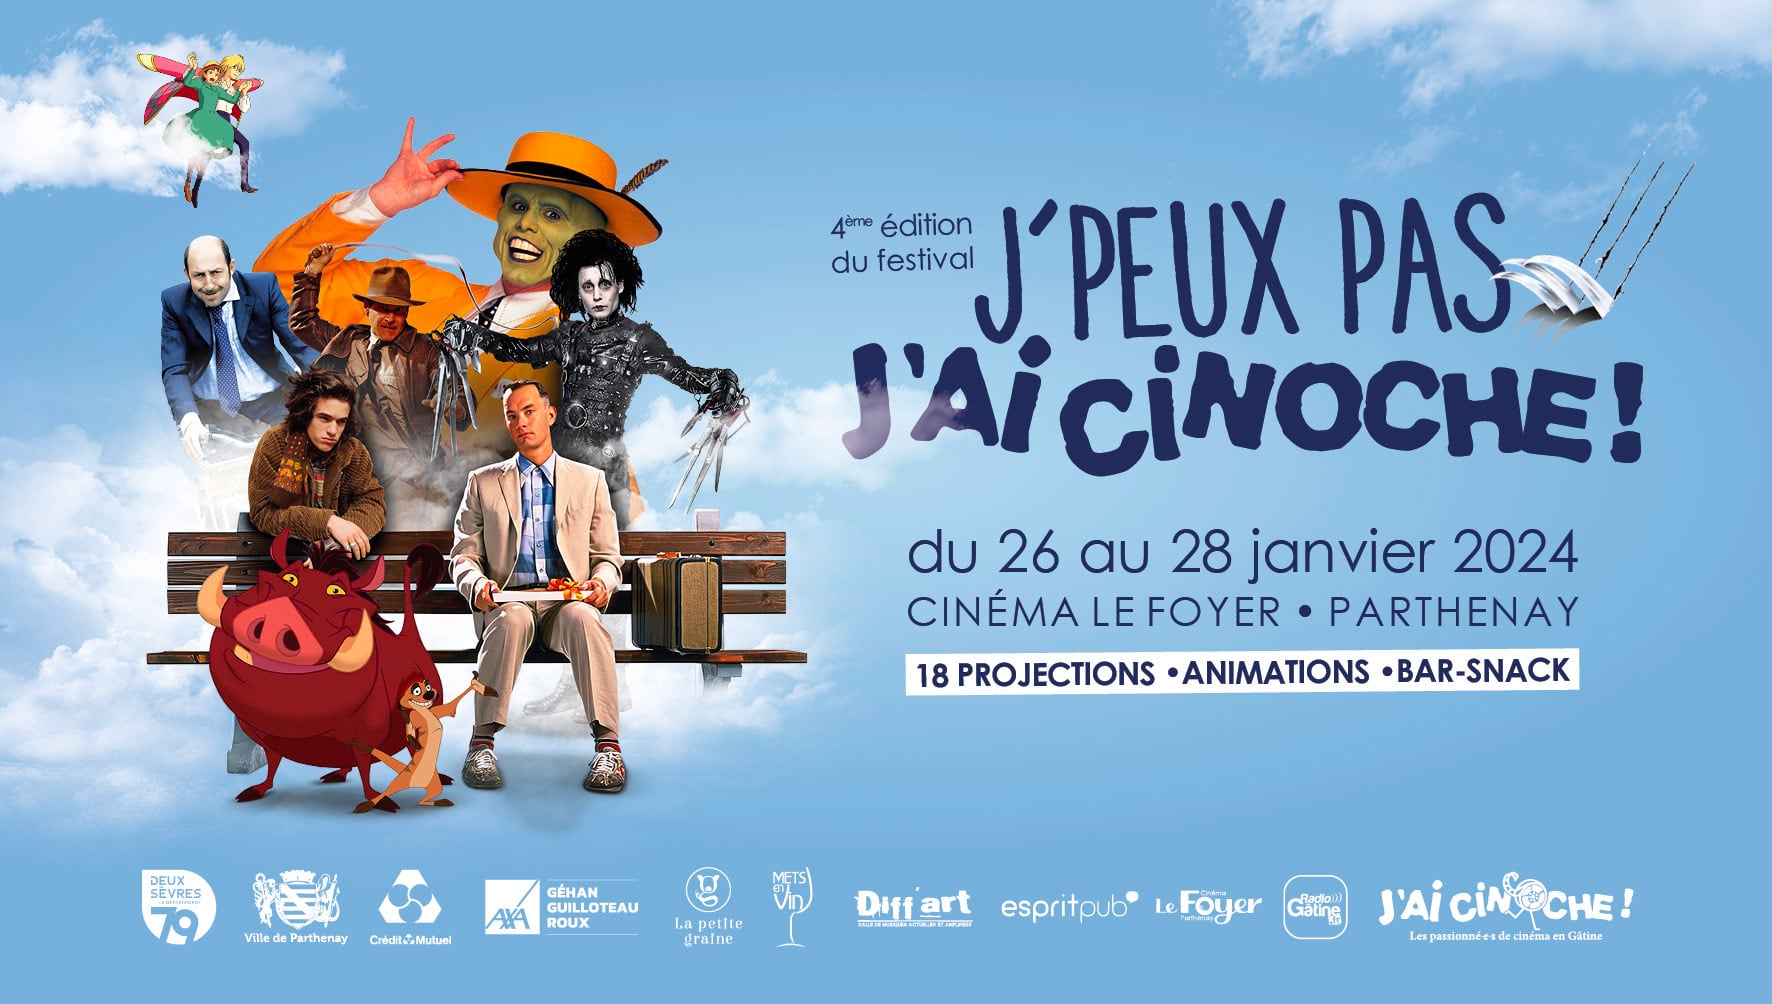 4ème édition du festival J'ai Cinoche, du 26 au 28 Janvier 2024 - Cinéma Le Foyer Parthenay. 18 projections, animations, bar-snack sur place